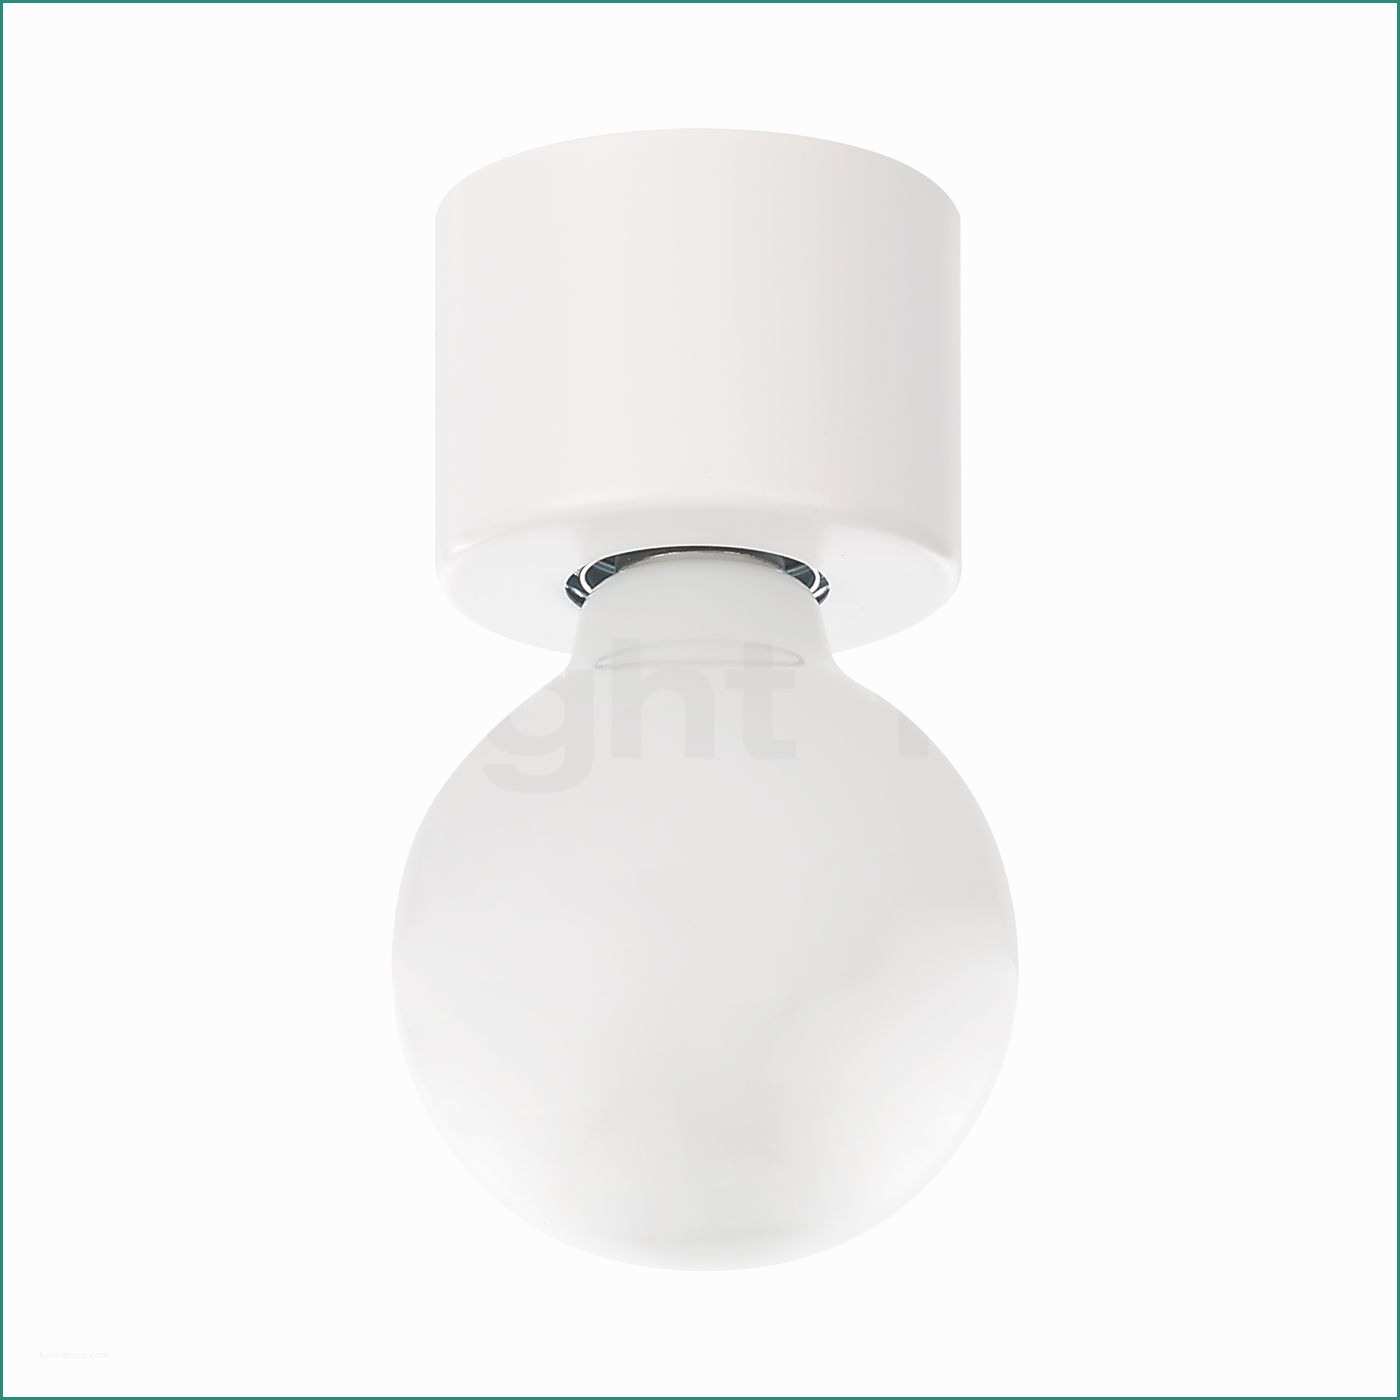 Lampadari A soffitto Moderni E Lampade Design Da Parete Pinup Lampada Da Parete A Led orientabile